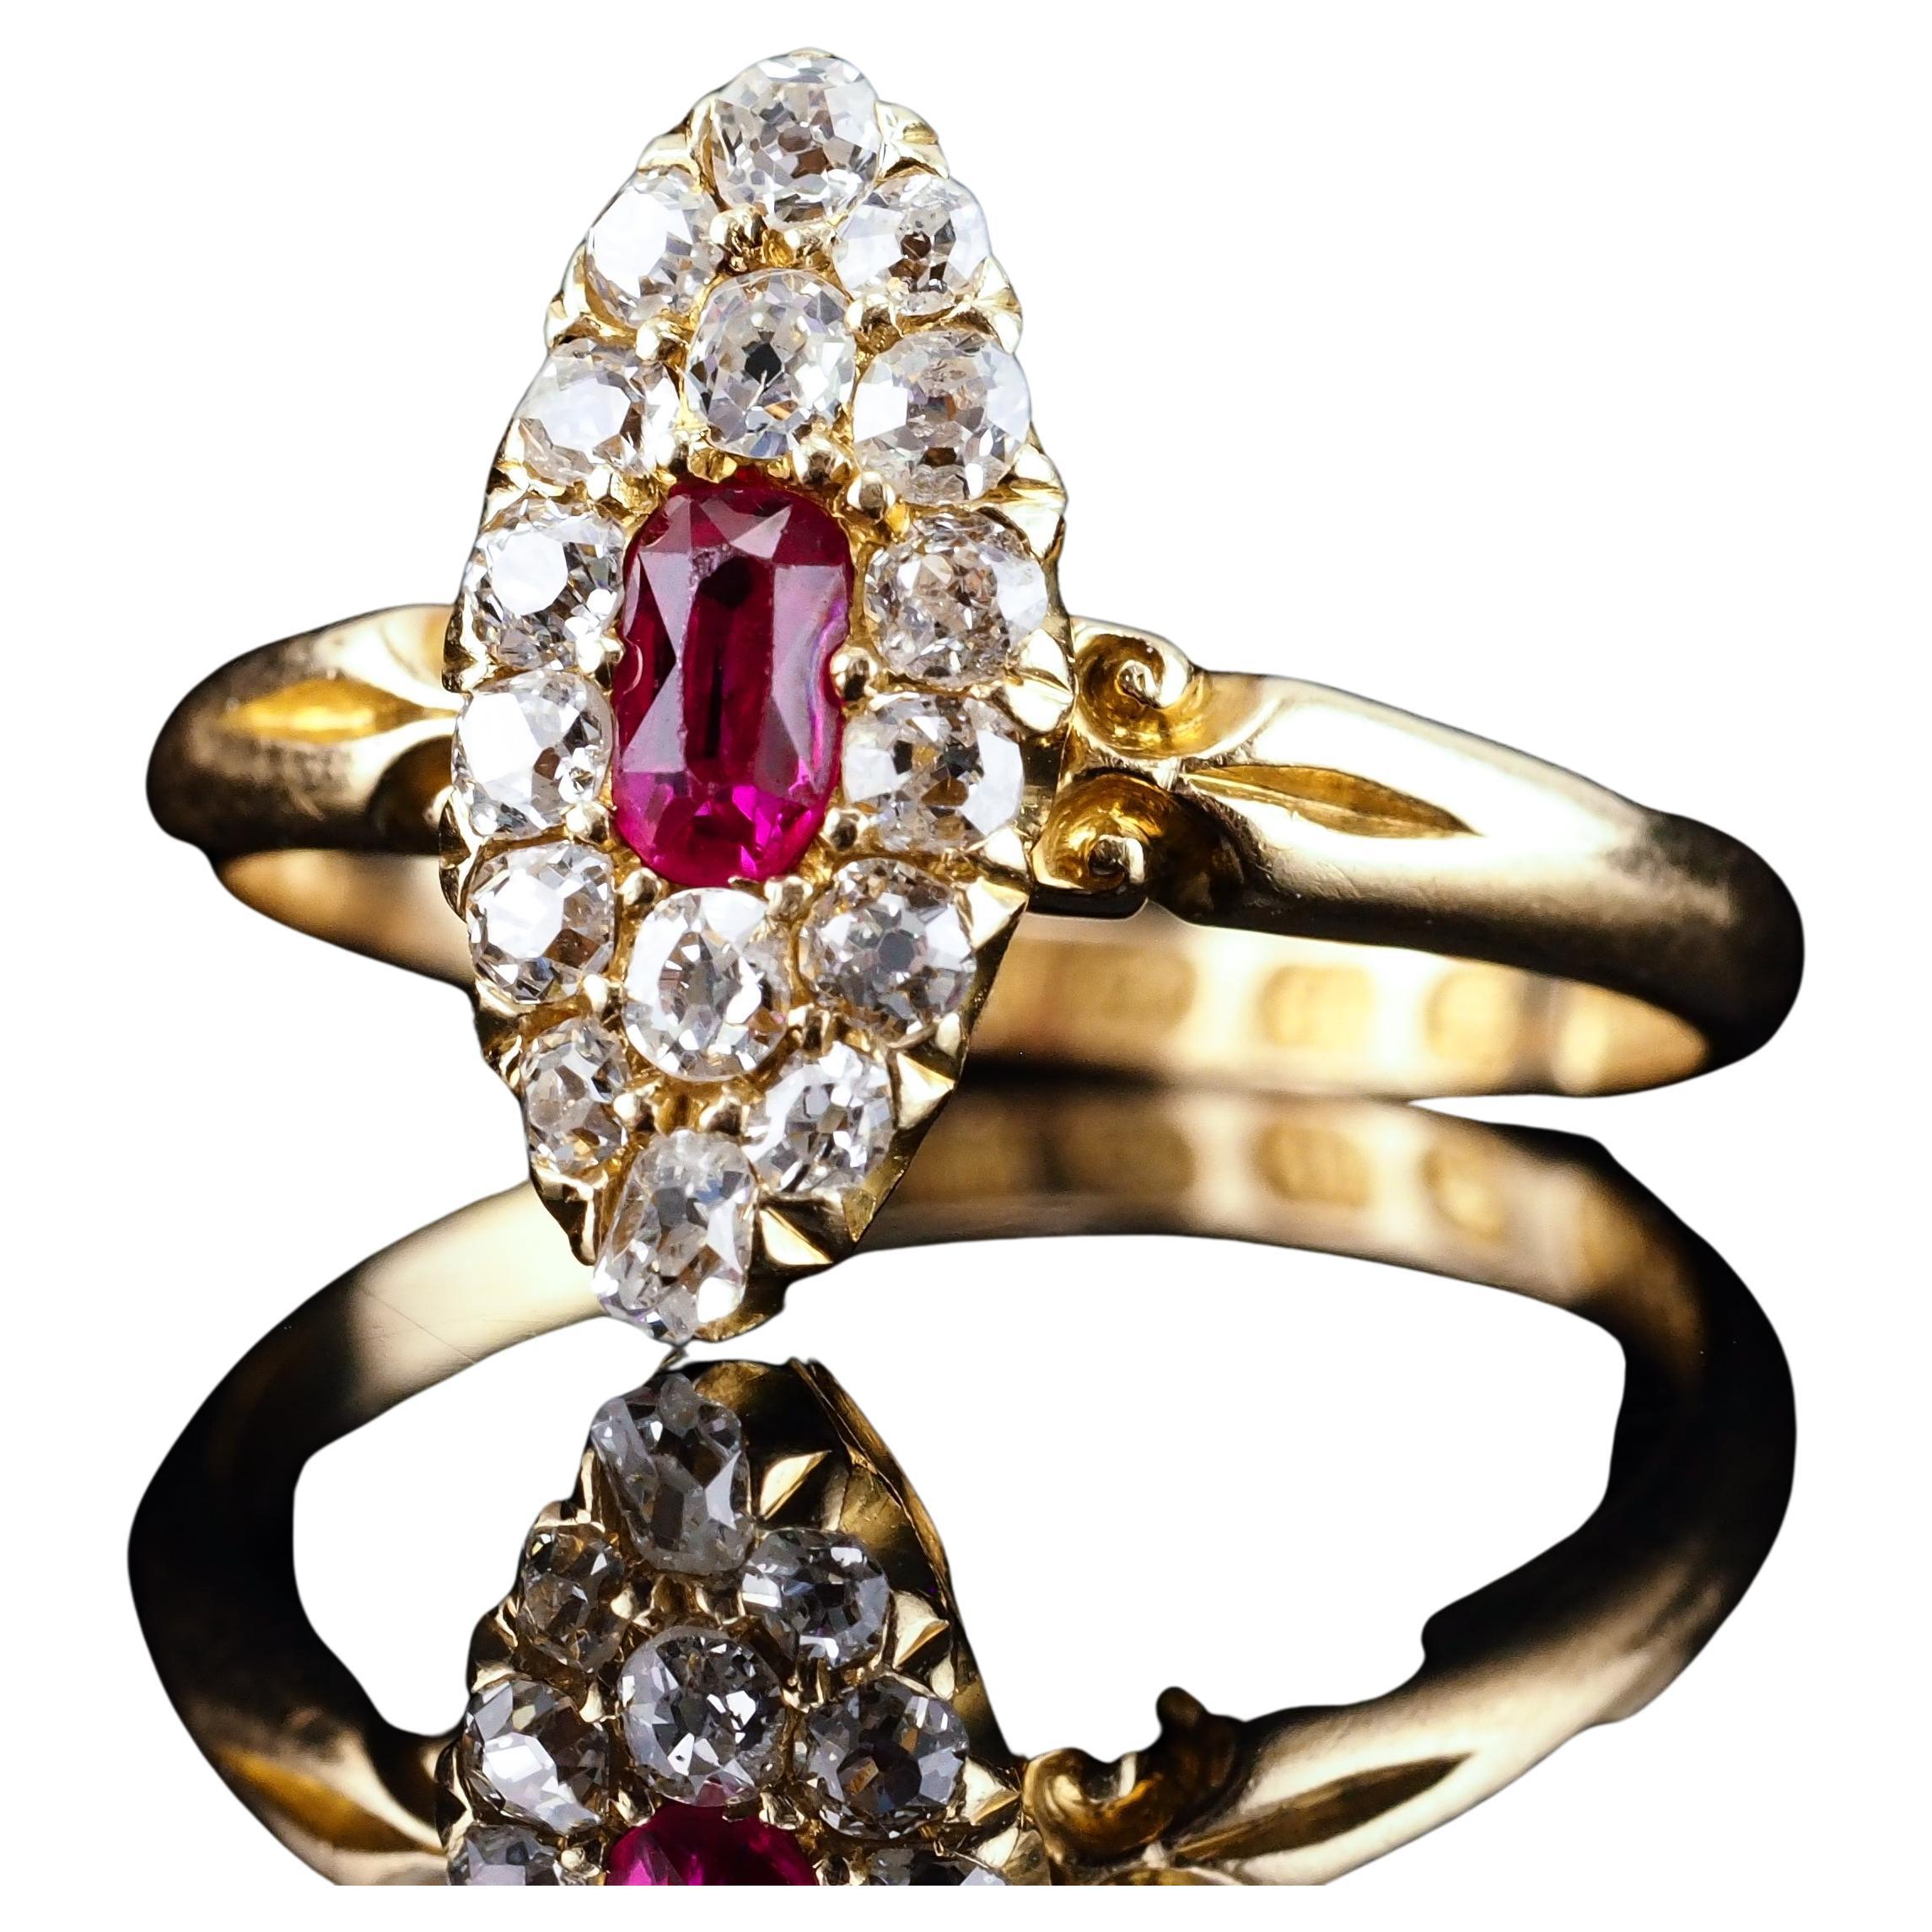 Bague victorienne ancienne en or 18 carats avec rubis et diamants, motif navette - 1886